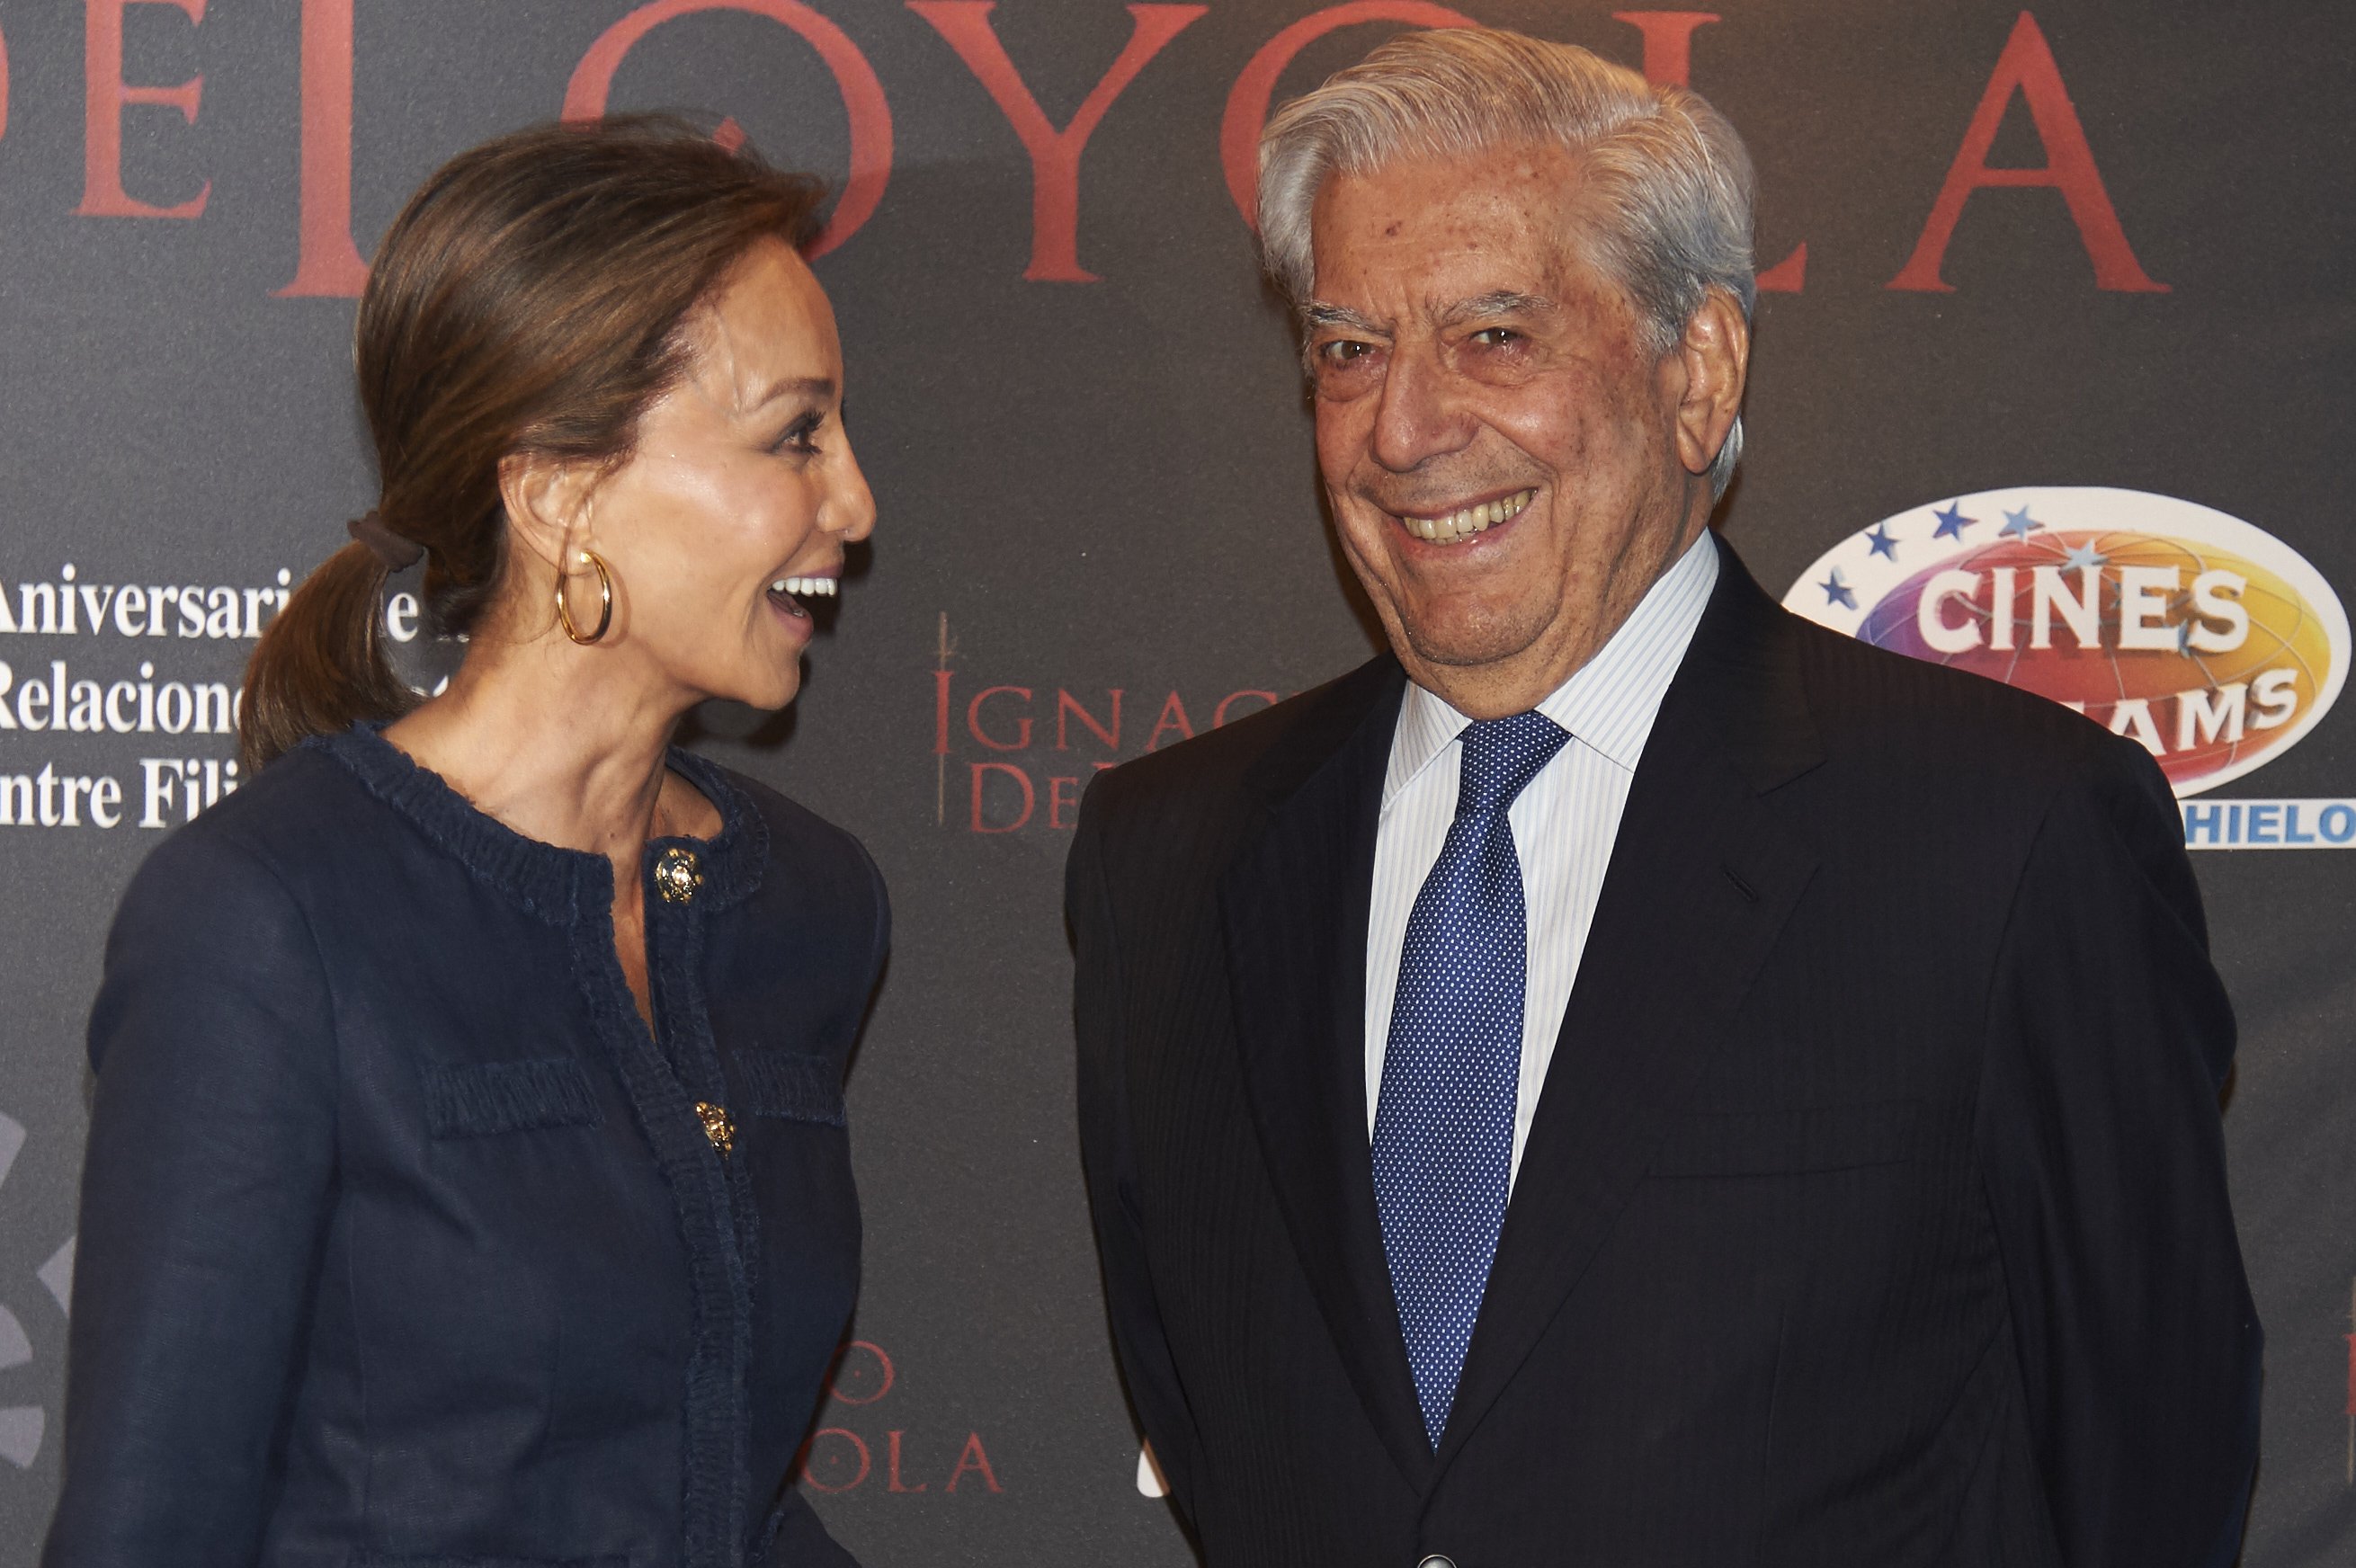 Vargas Llosa, ¿una reconciliación familiar a espaldas de Preysler?